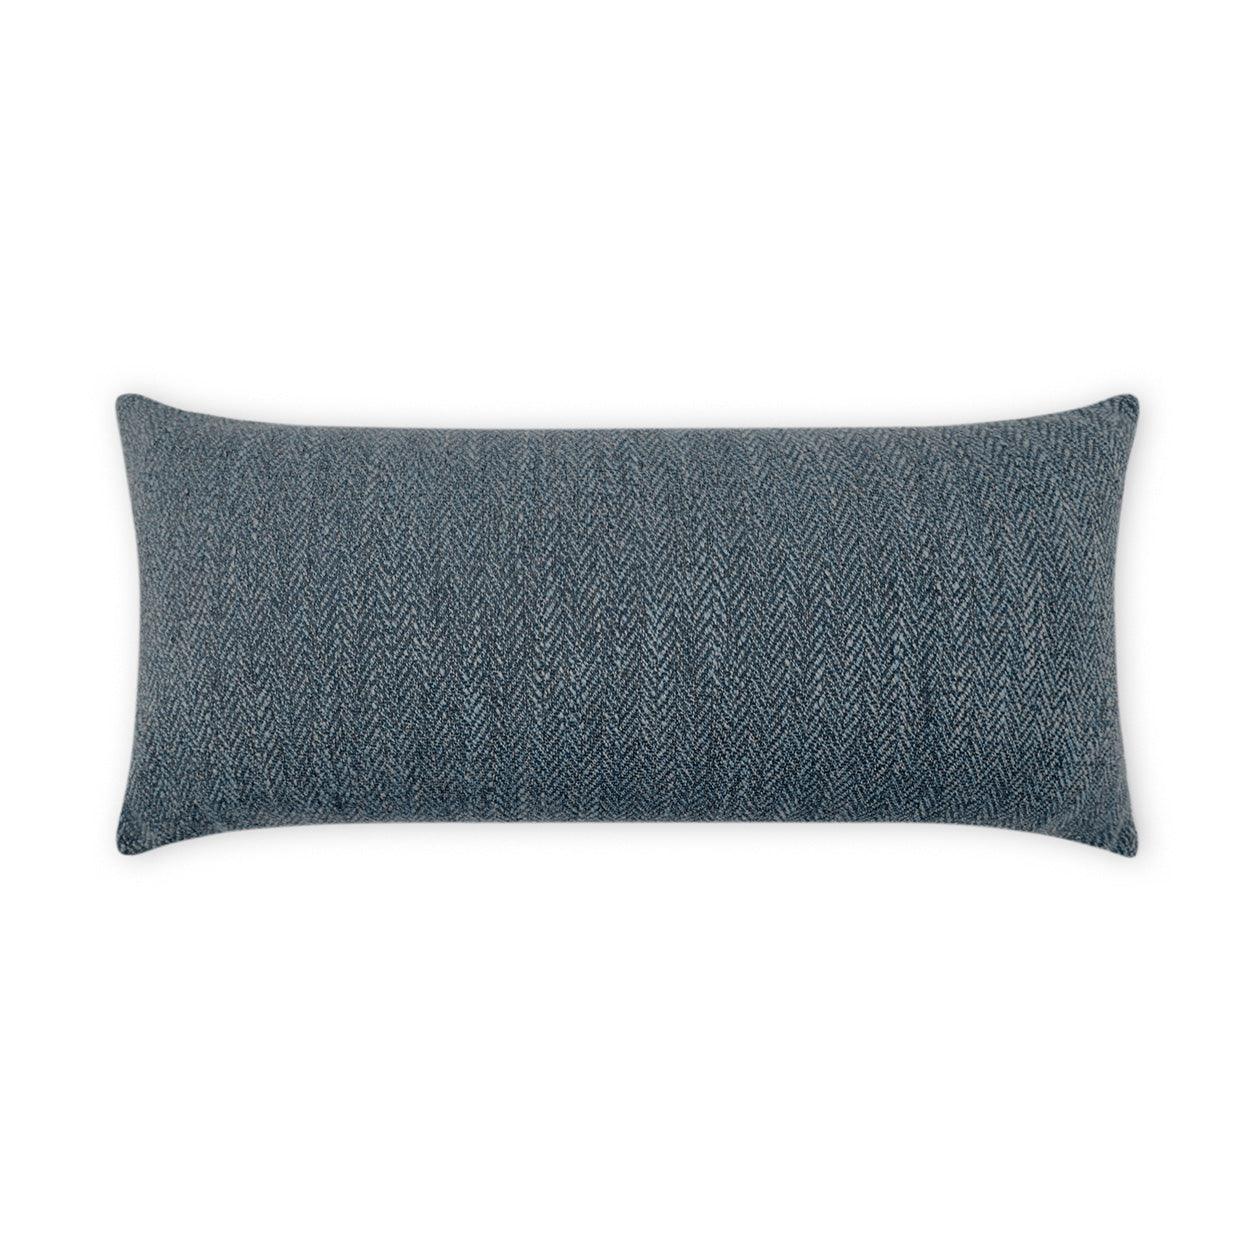 LOOMLAN Outdoor - Outdoor Stratford Lumbar Pillow - Denim - Outdoor Pillows